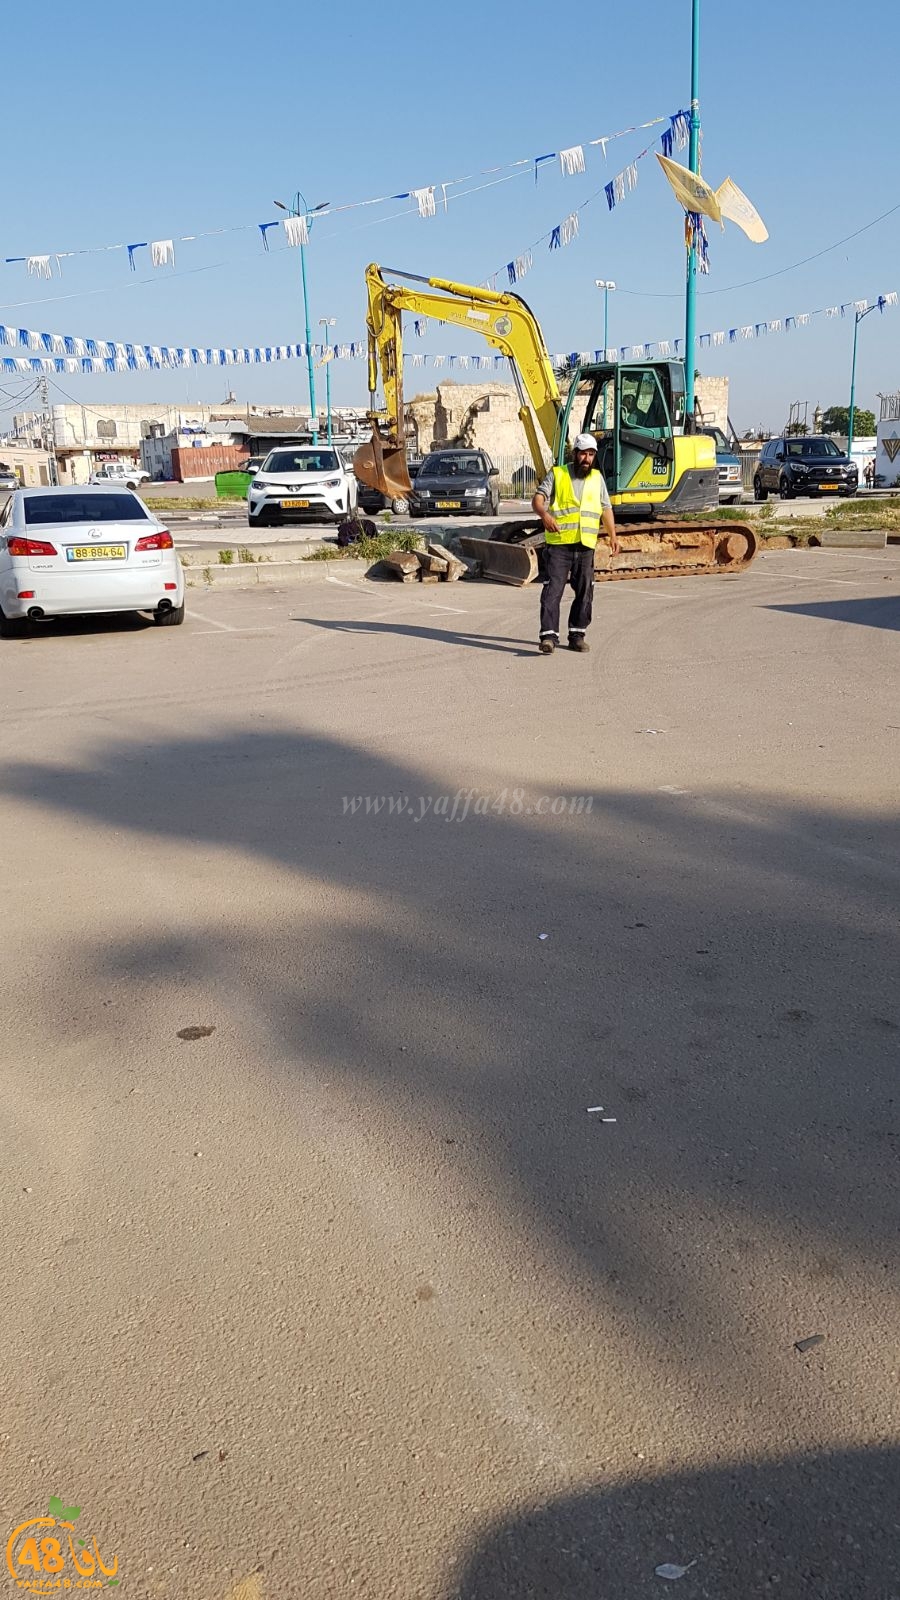 اللد : البدء بمشروع توسعة ساحة المسجد العمري الكبير موقف السيارات